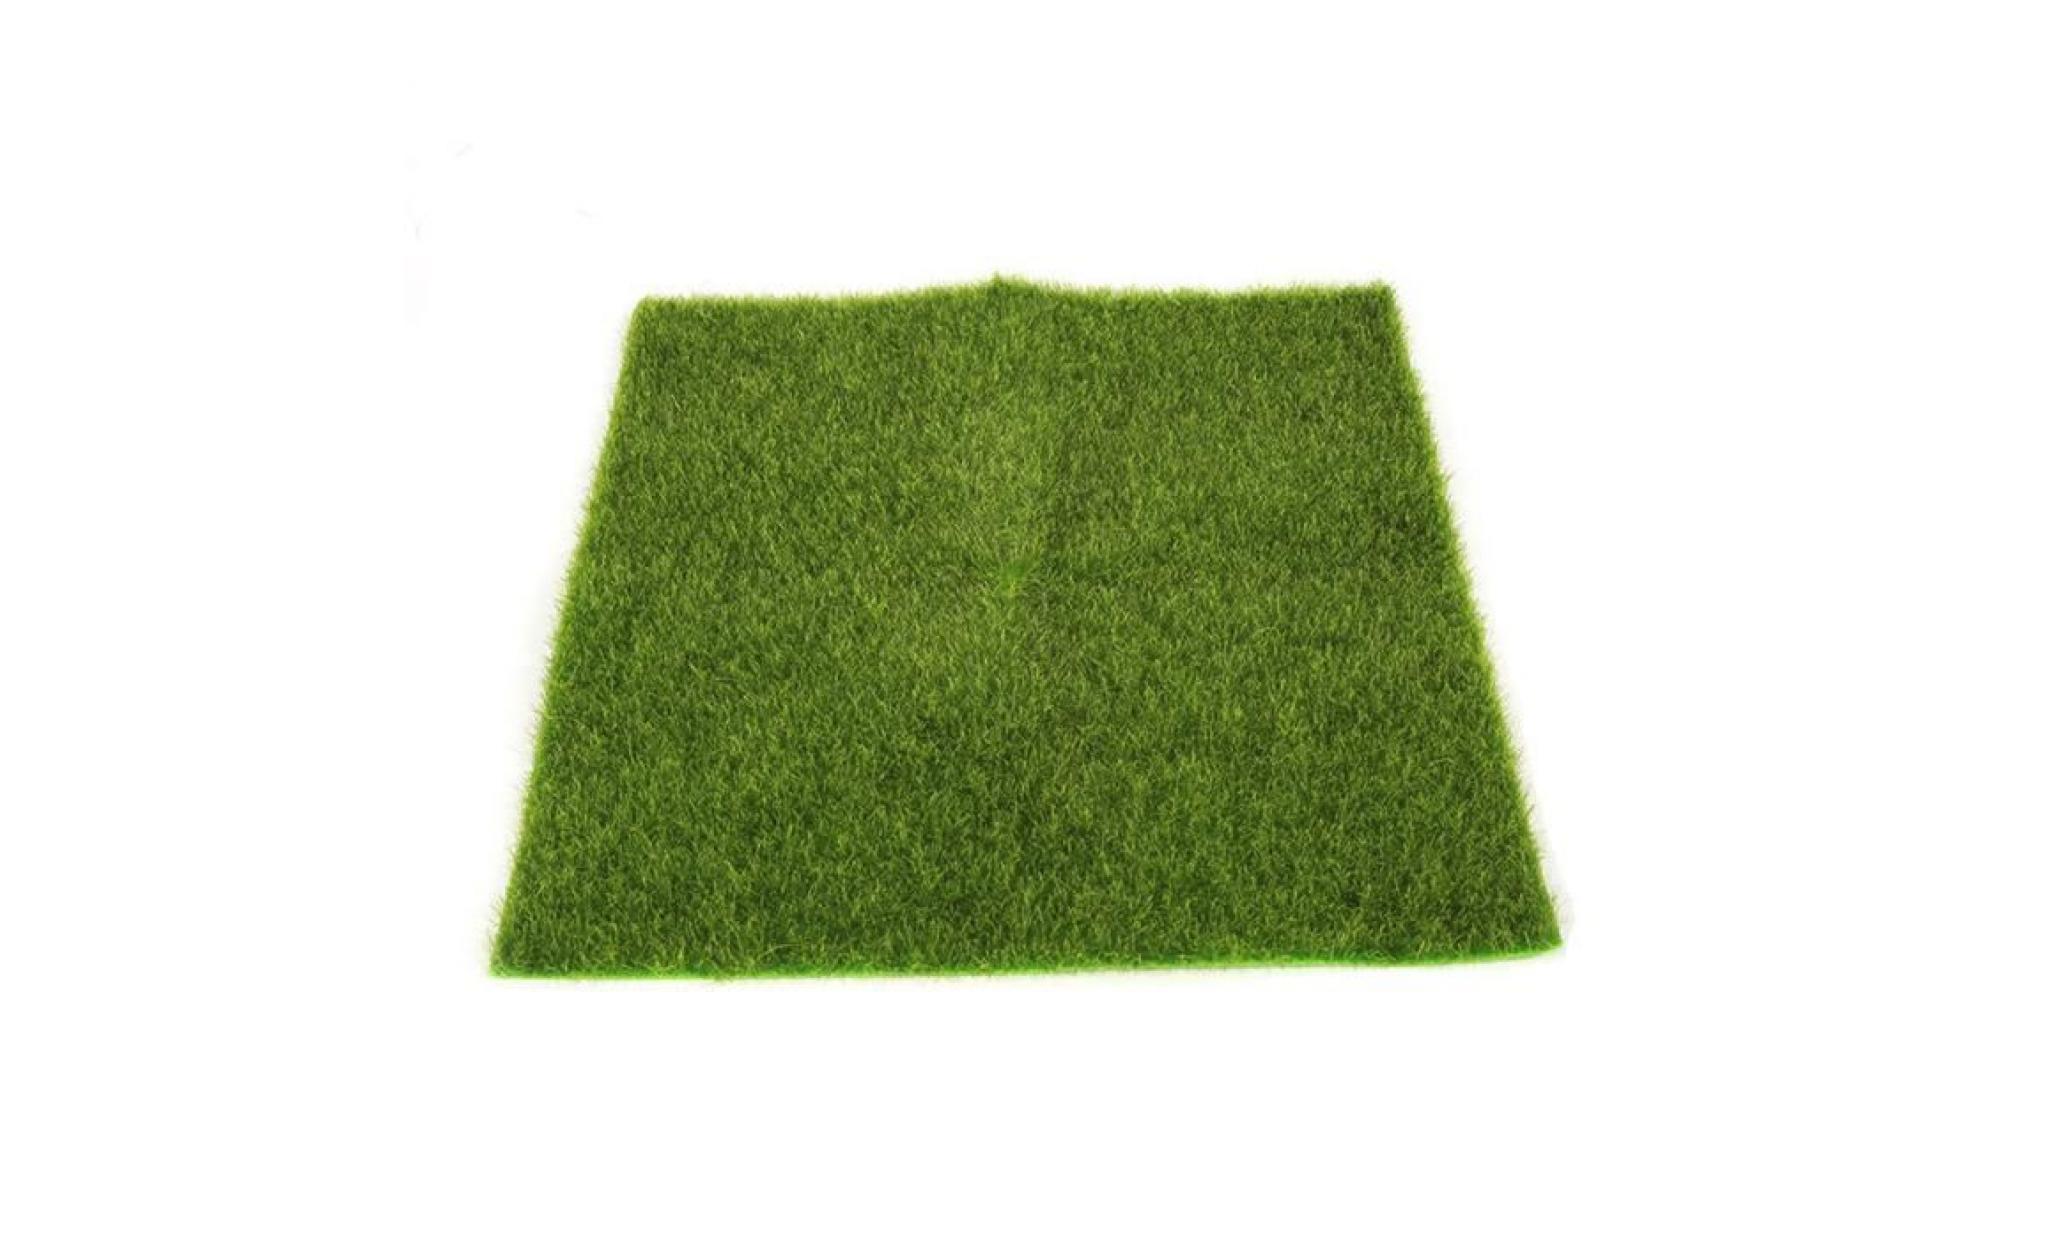 gazon artificiel faux jardin herbe pelouse moss craft miniature dollhouse décor be8663 pas cher